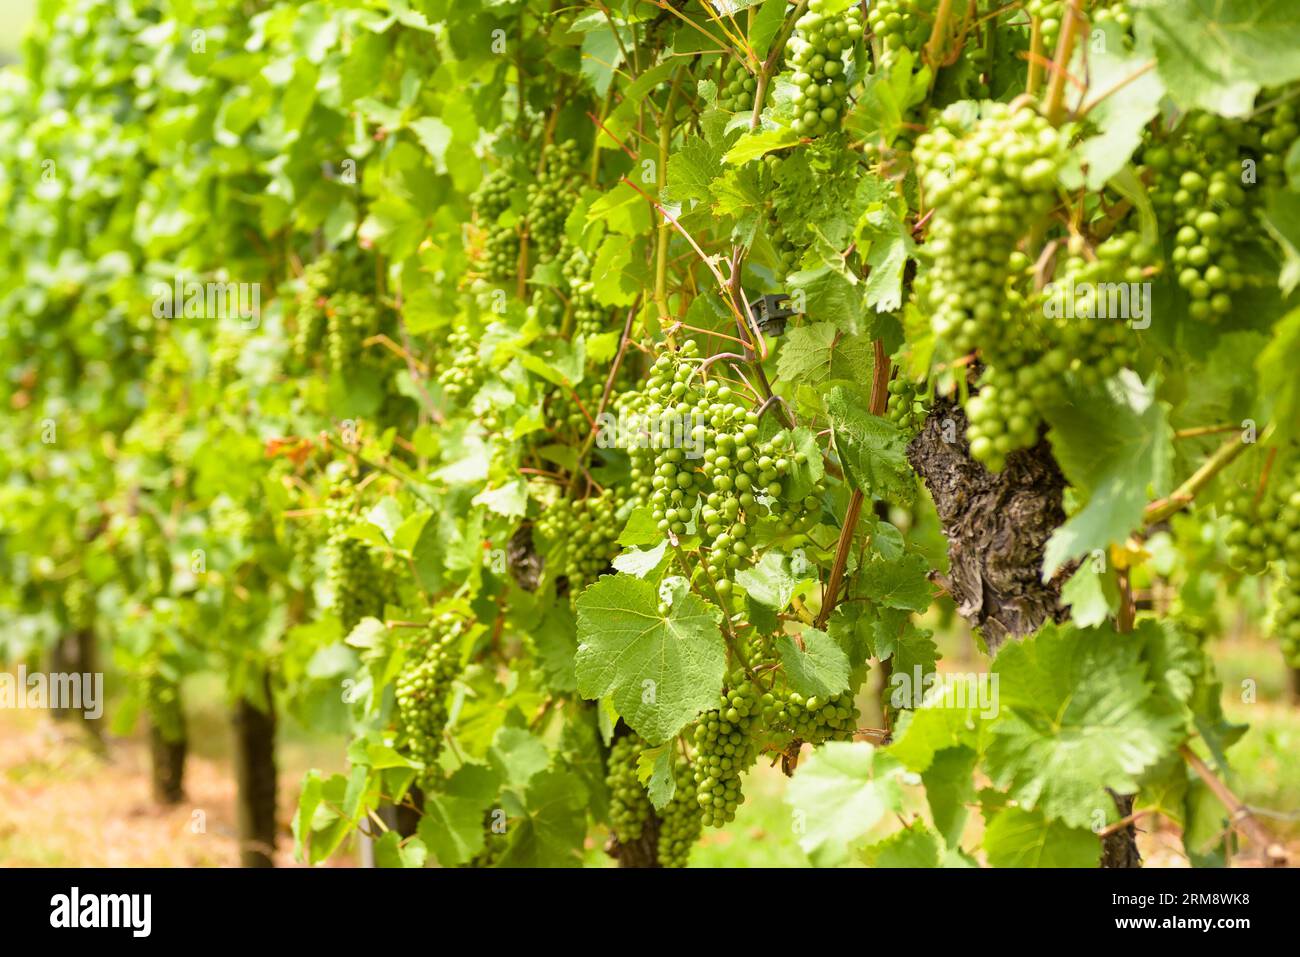 Gros plan du vignoble, culture du raisin dans la ferme viticole en été. Plants de vigne sur plantation de vigne verte. Concept de viticulture, cave, vinification, orgue Banque D'Images